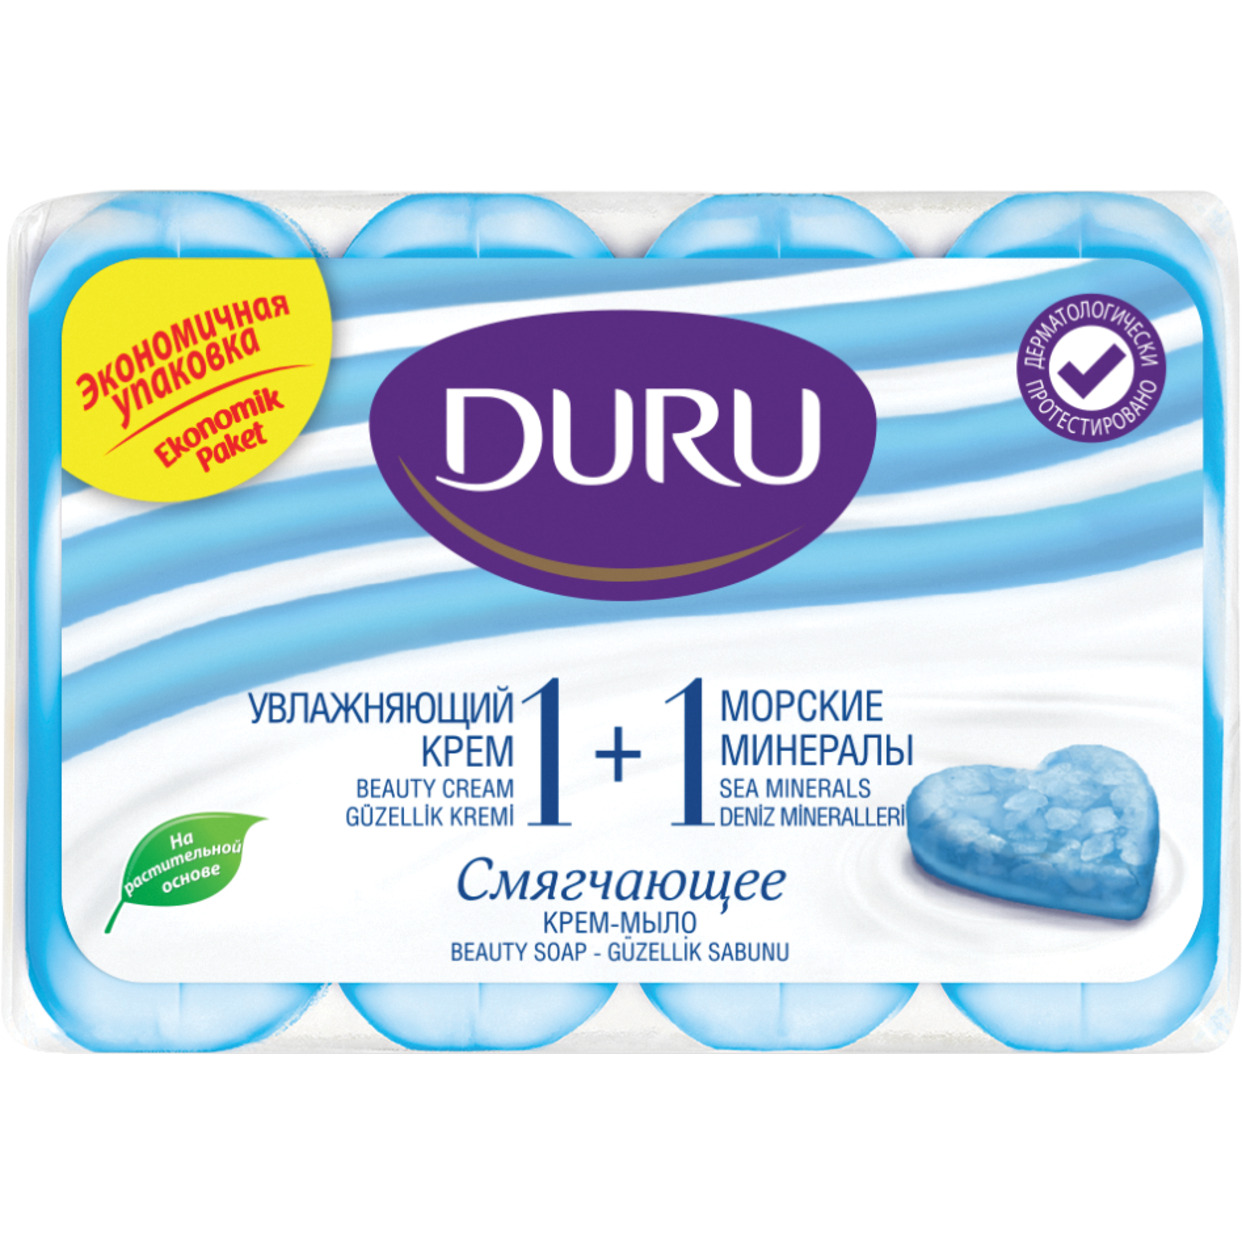 DURU 1+1 Туалетное крем-мыло Увлажняющий крем & морские минералы (э/пак) 4*80г*12 по акции в Пятерочке